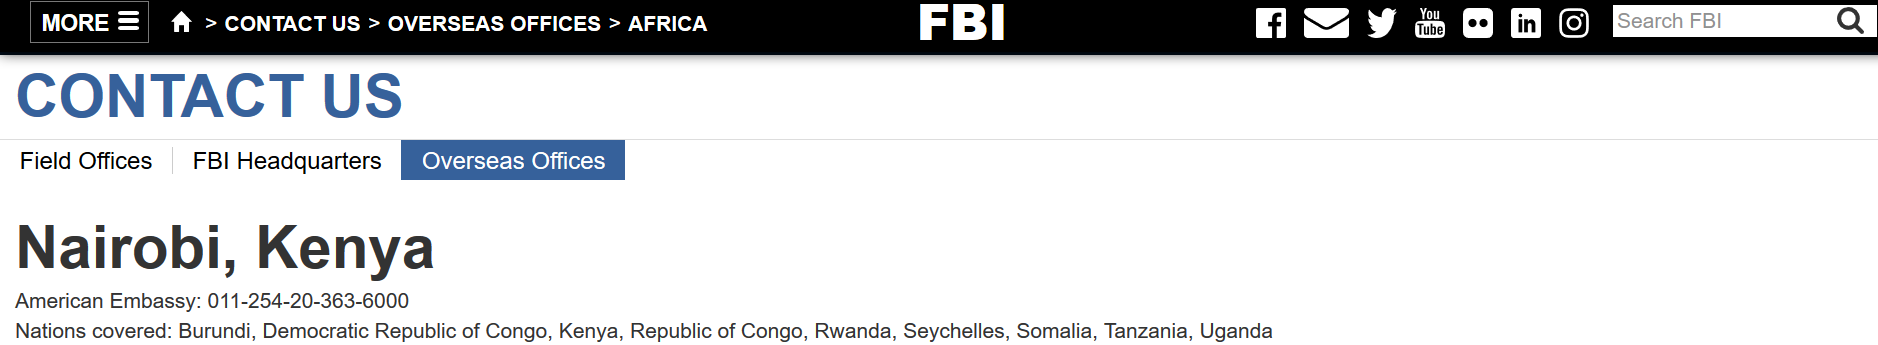 FBI Nairobi office image.png